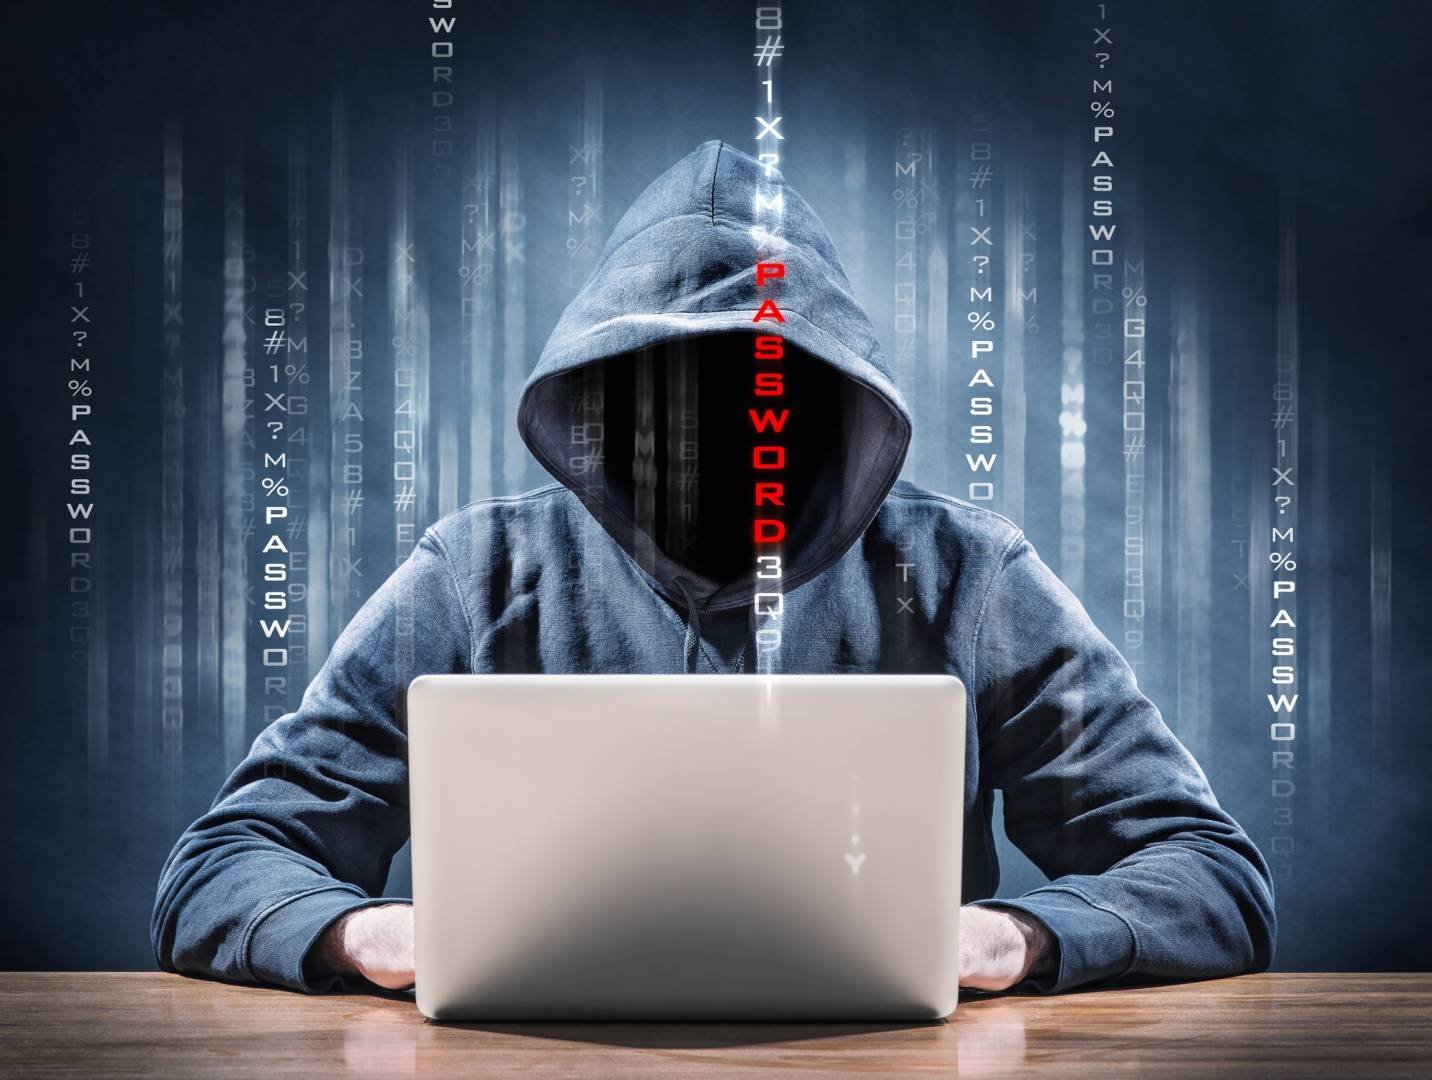 Immagine di Hacktivisti in calo secondo IBM, dal 2015 attacchi diminuiti del 95%